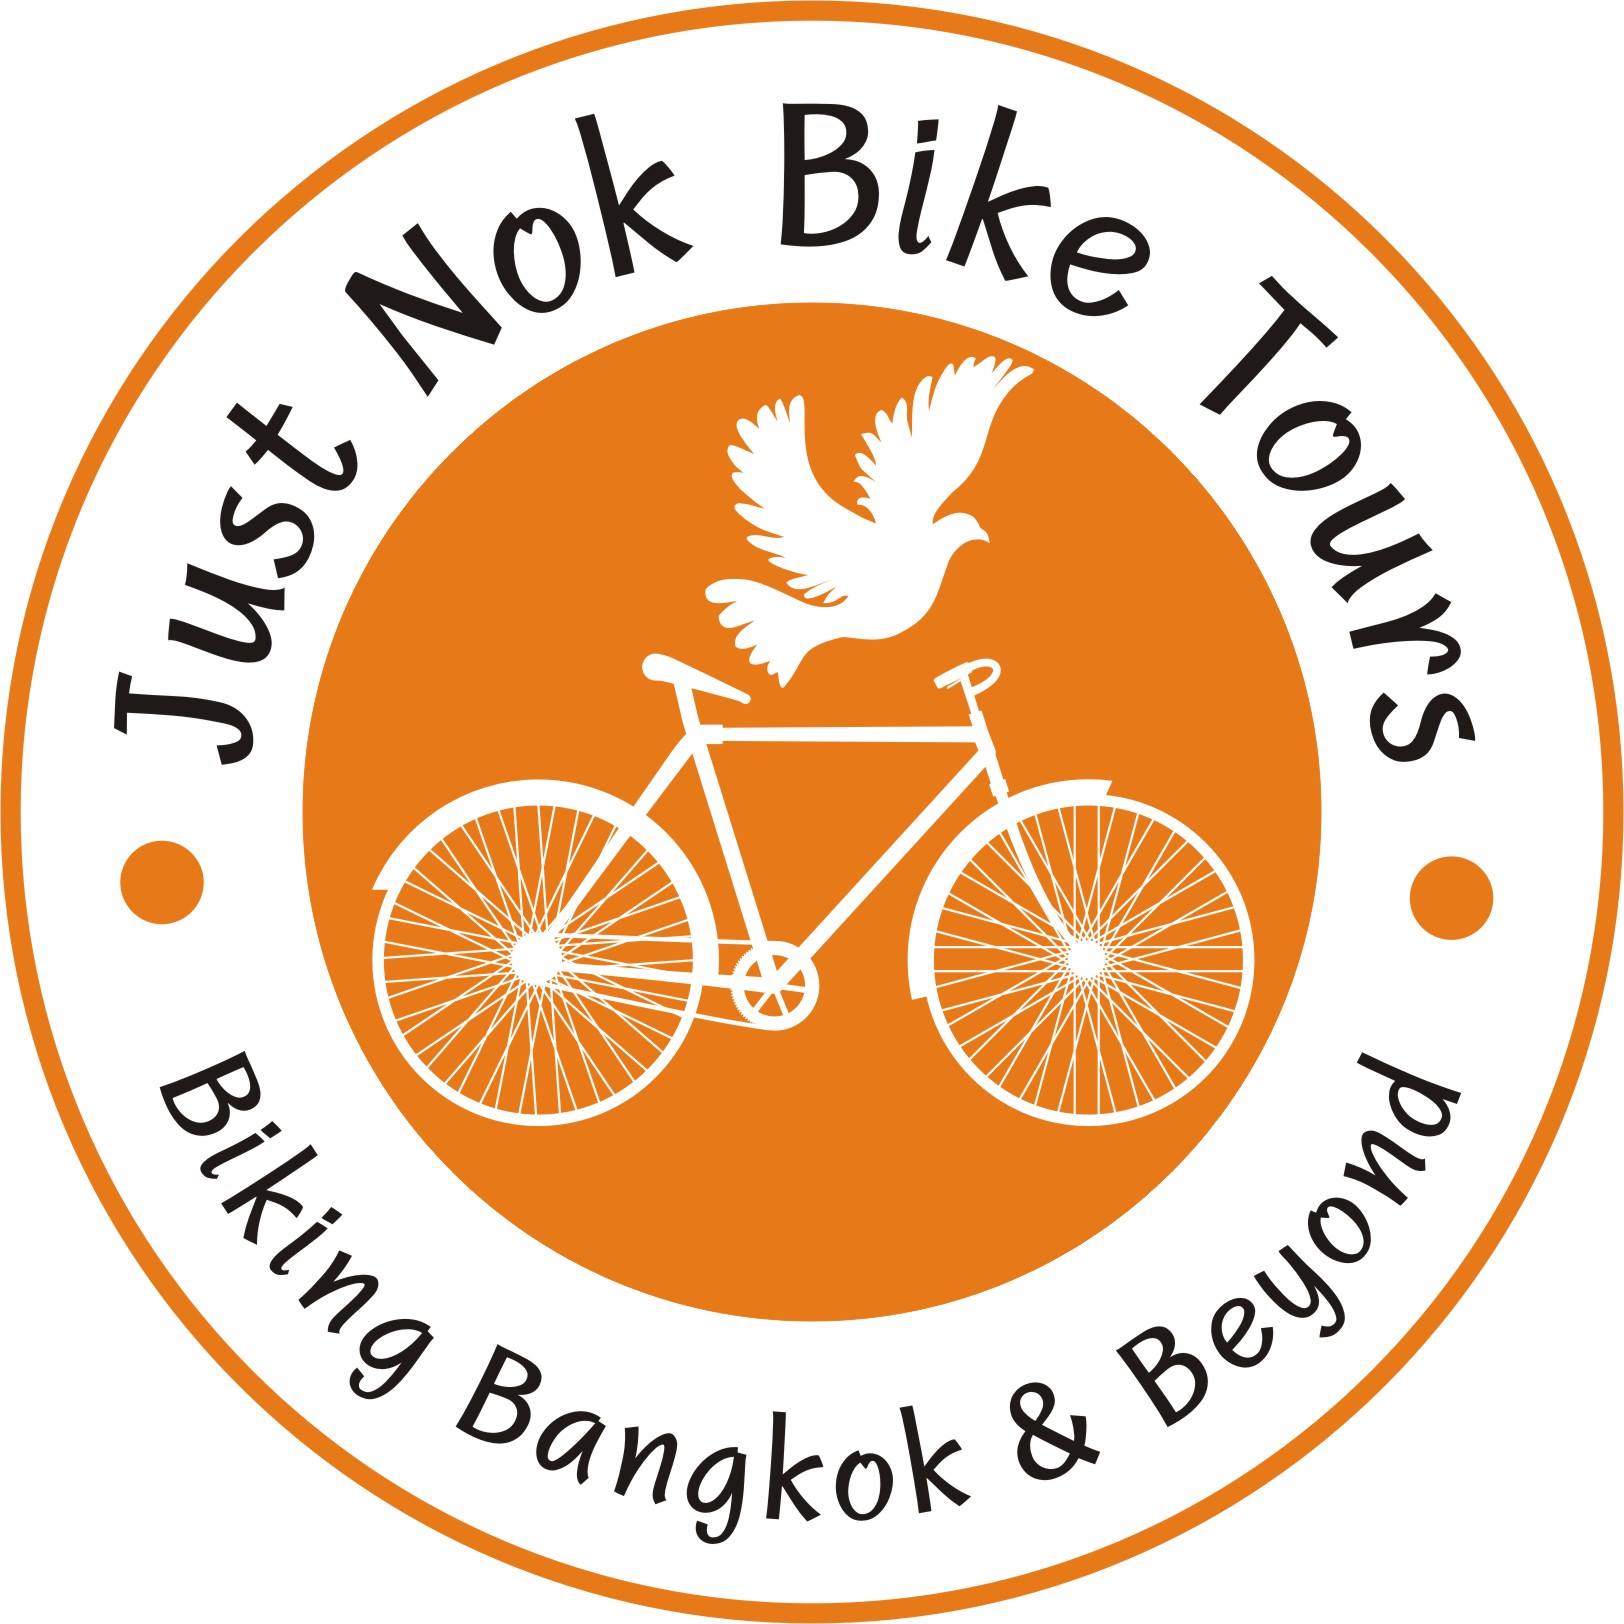 NOK delivery logo. Motorbikes Tour logo. Just bikes